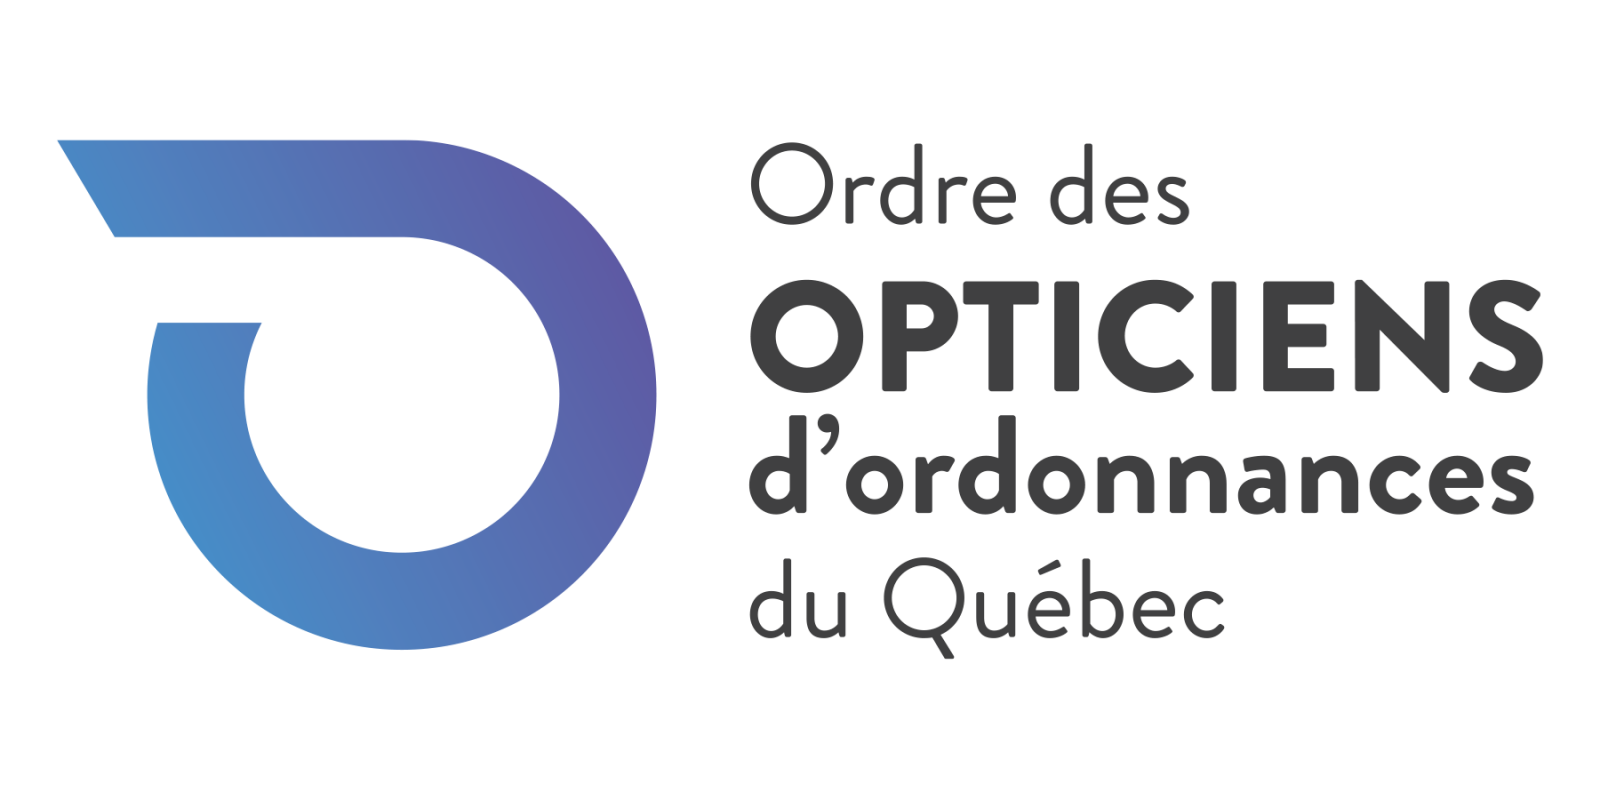 Ordre des opticiens d'ordonnances du Québec